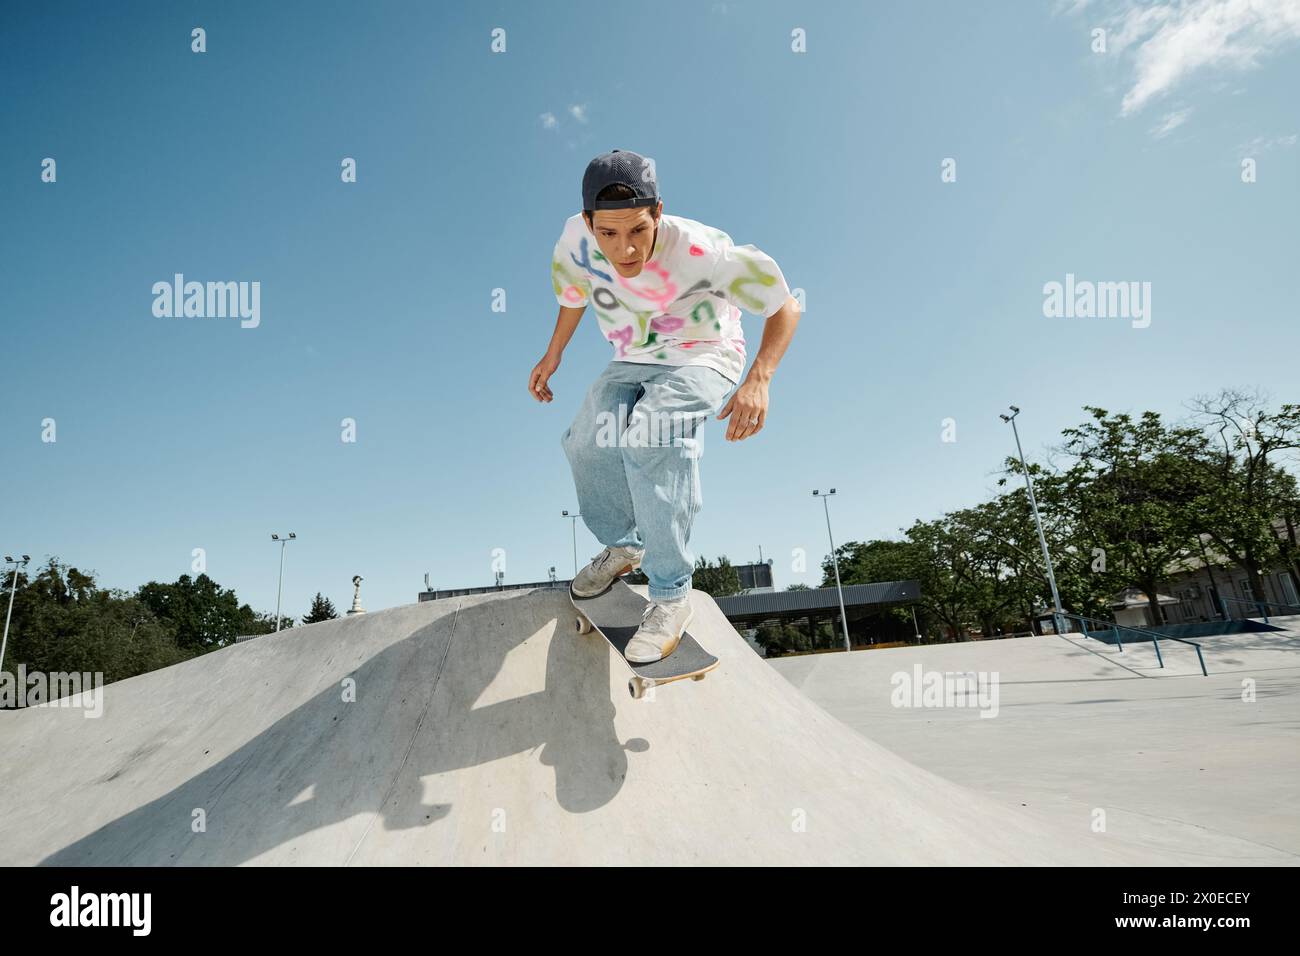 Ein junger Skater-Junge, der einen beeindruckenden Skateboardtrick entlang einer Rampe in einem sonnigen Skatepark im Freien vorführt. Stockfoto